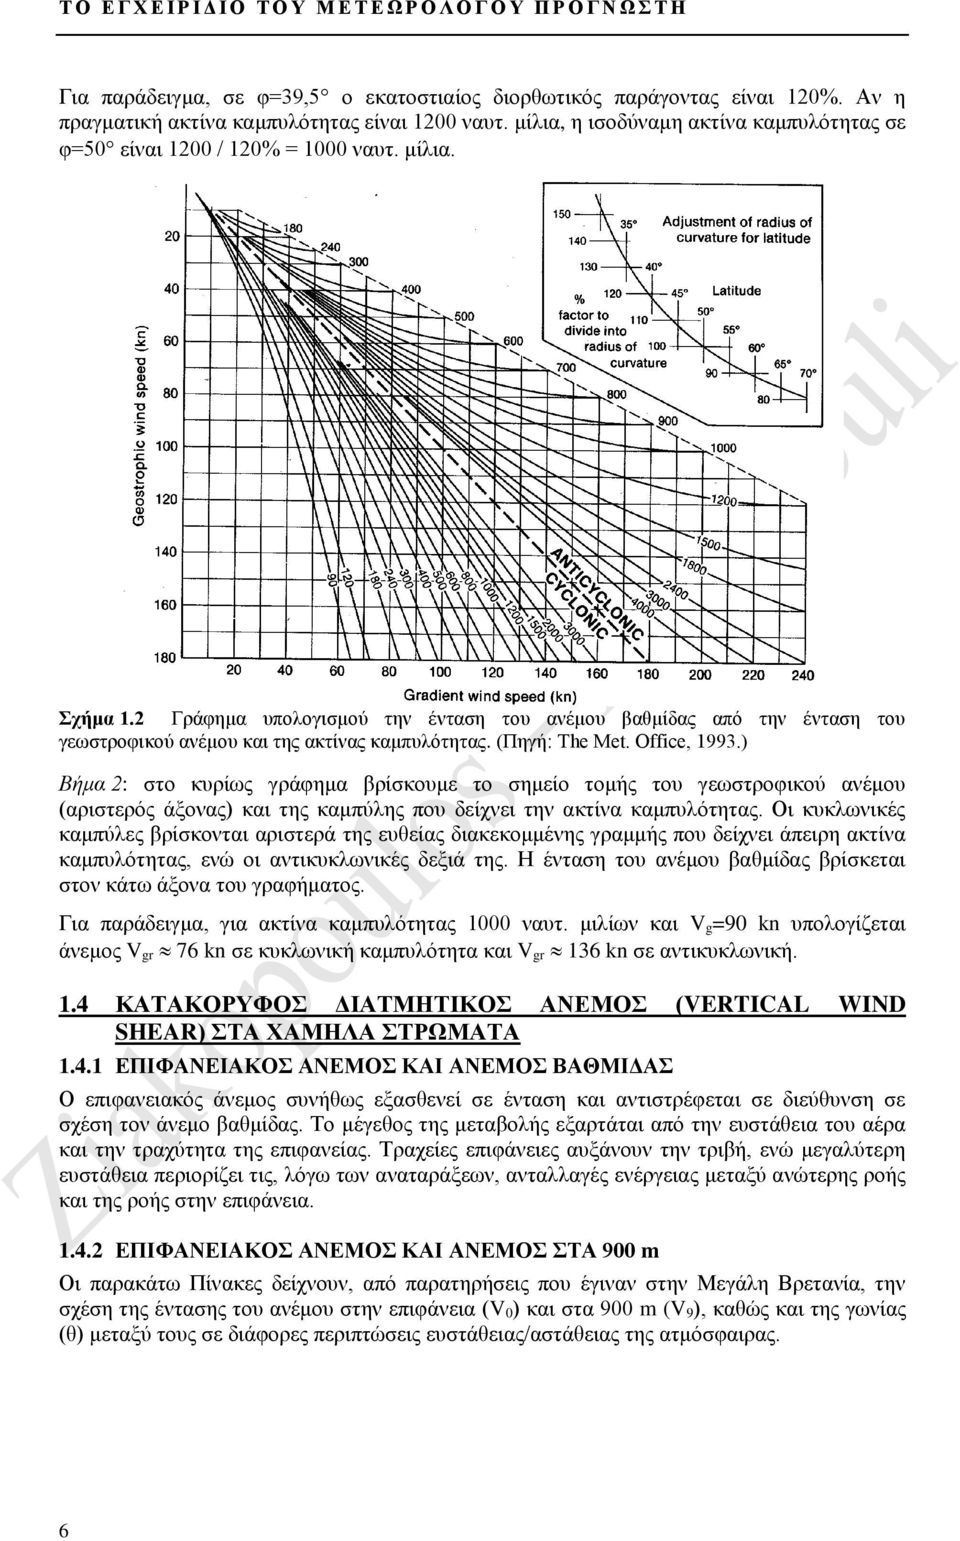 2 Γράφημα υπολογισμού την ένταση του ανέμου βαθμίδας από την ένταση του γεωστροφικού ανέμου και της ακτίνας καμπυλότητας. (Πηγή: The Met. Office, 1993.